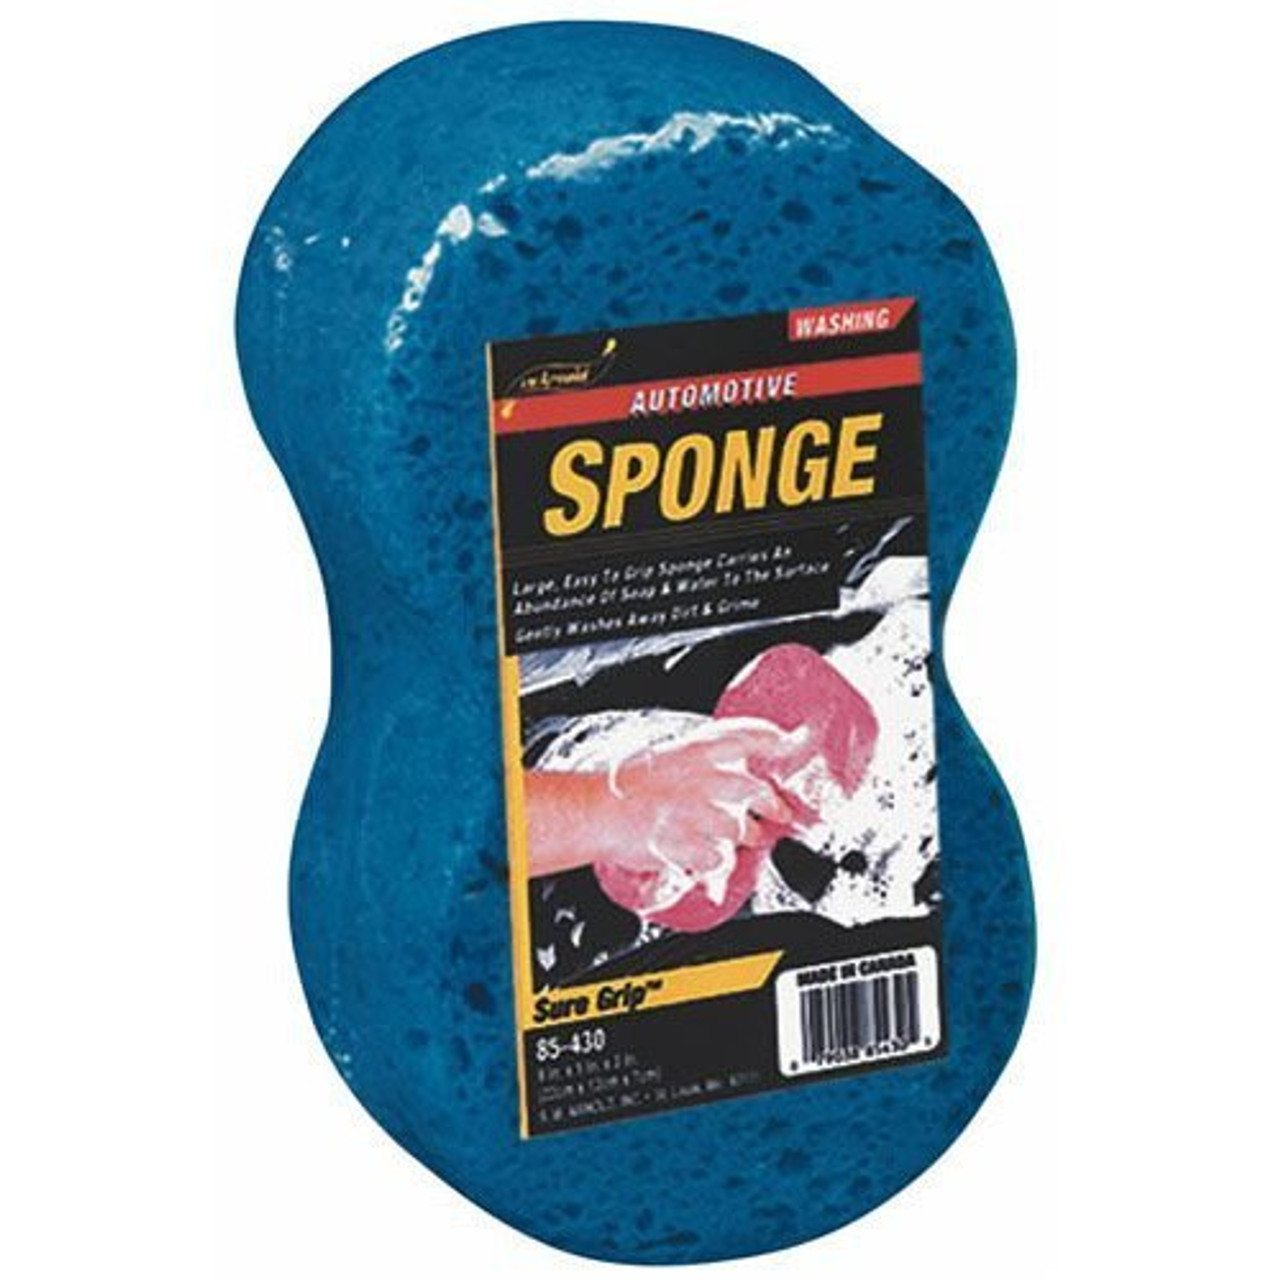 Carrand, Giant bone sponge 8.75 x 4.75 x 3 40102